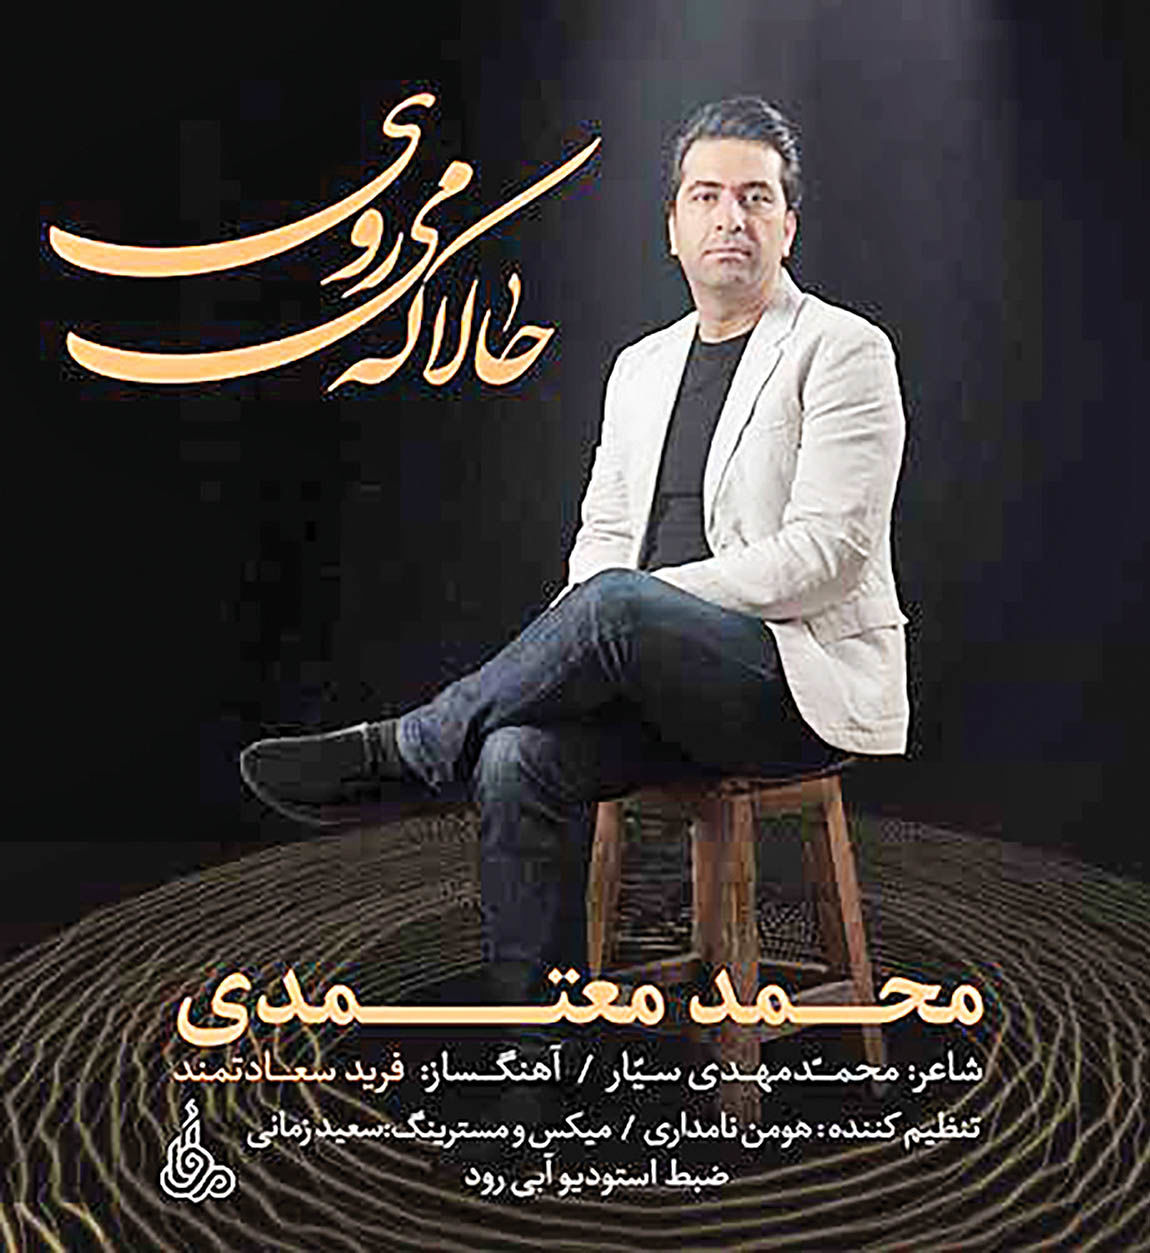 آلبوم جدید محمد معتمدی در راه بازار